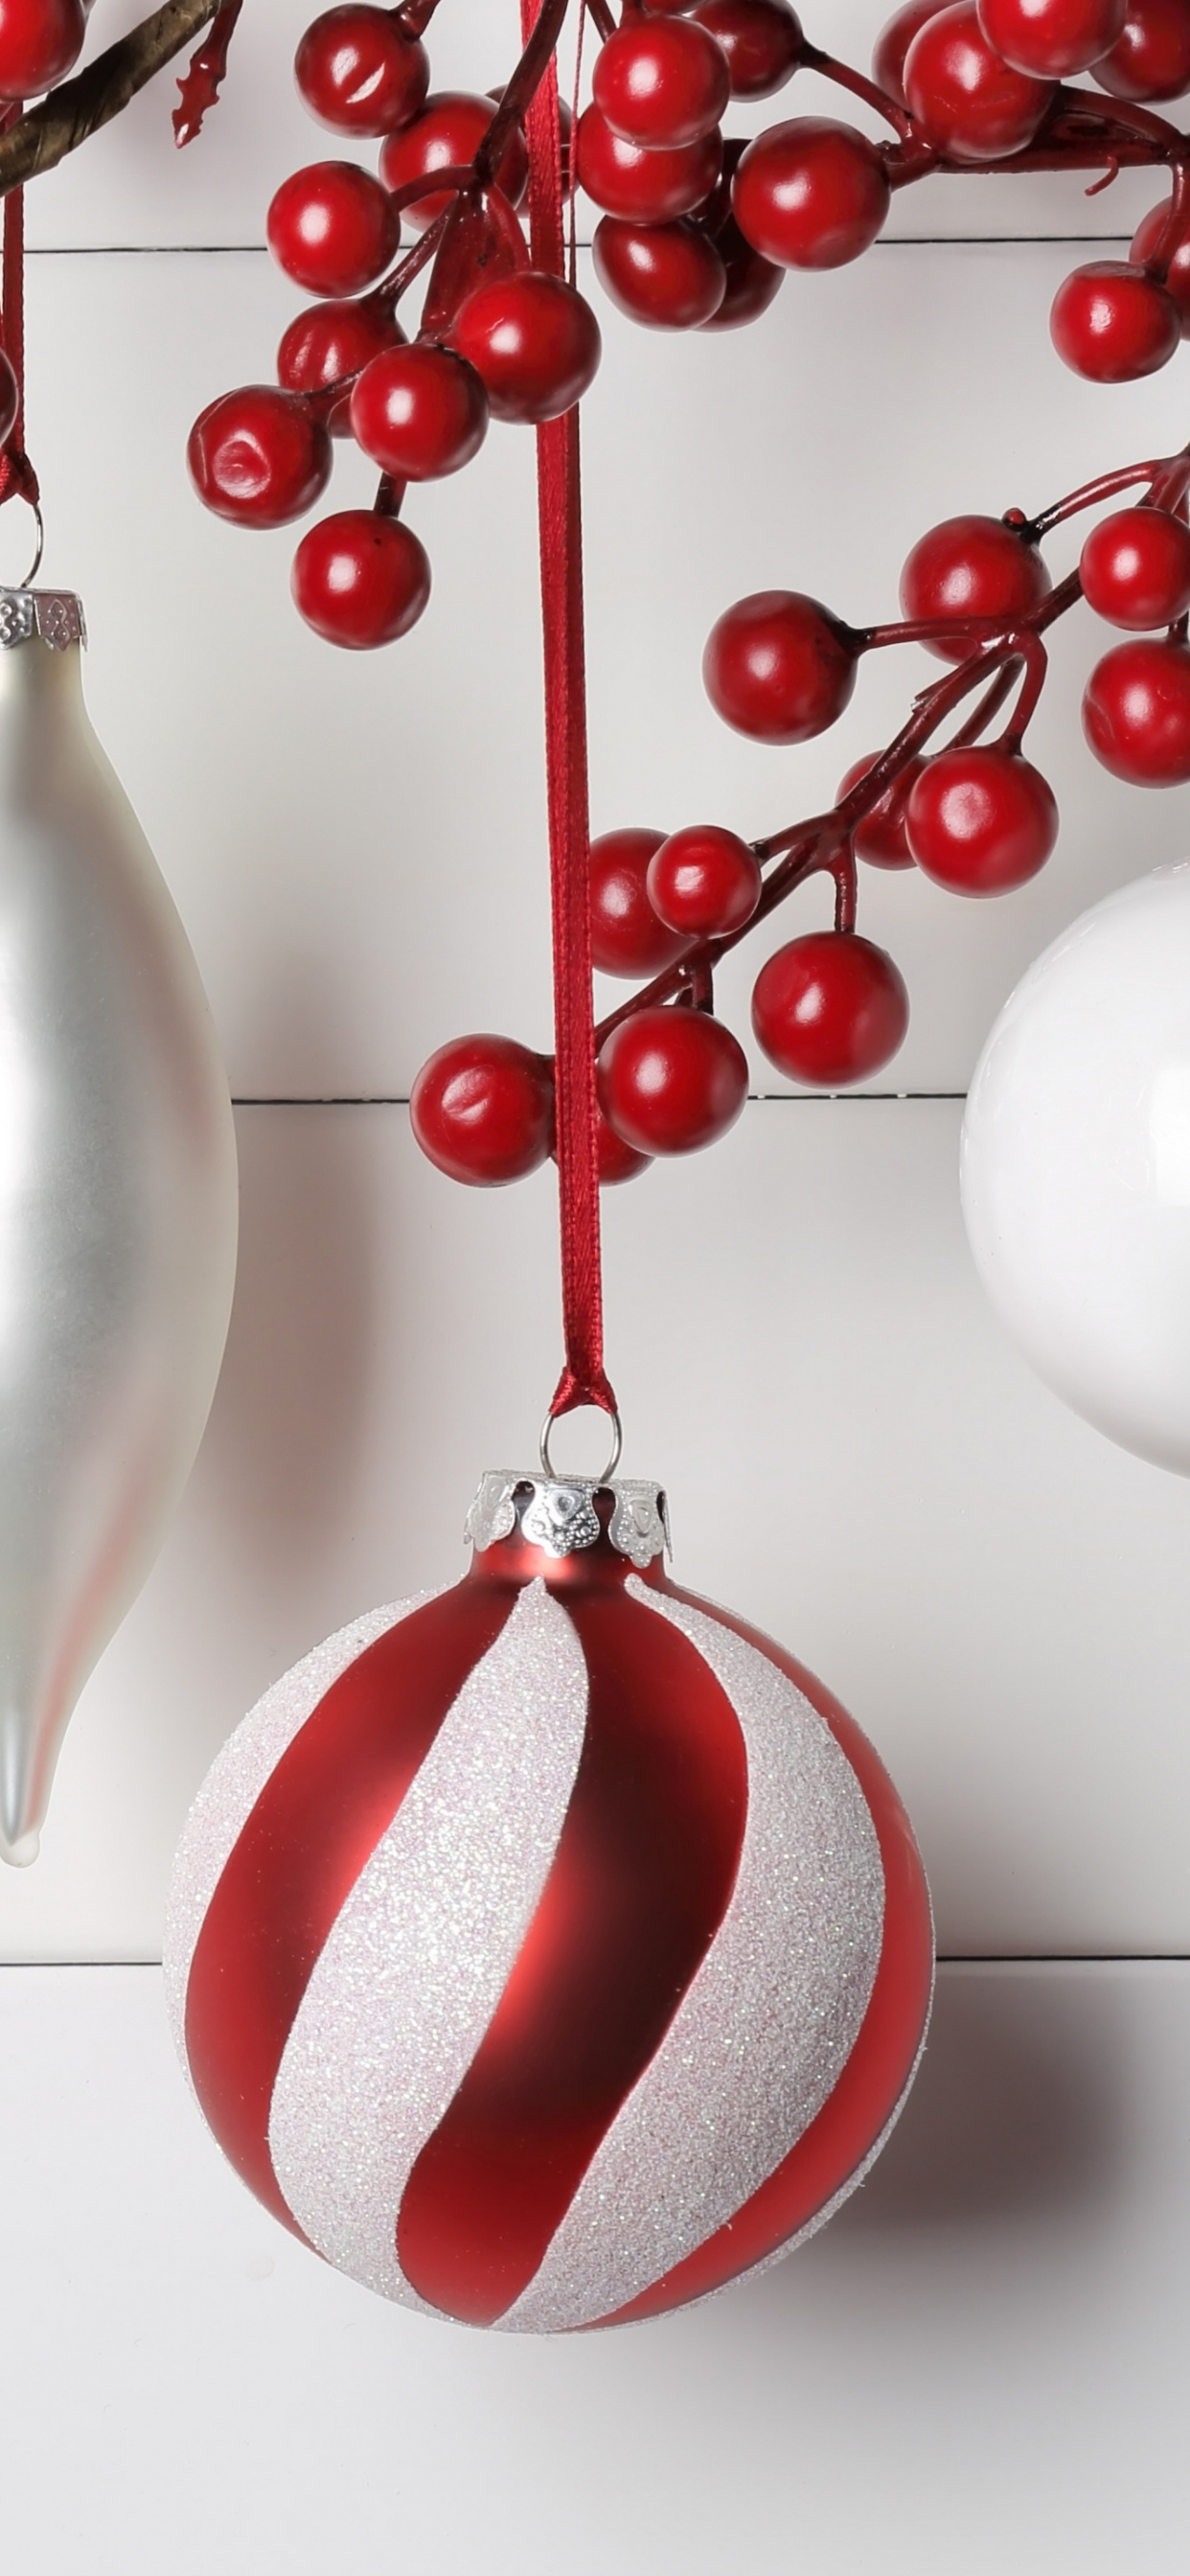 圣诞节那天, 圣诞节的装饰品, 圣诞装饰, 新的一年, 红色的 壁纸 1242x2688 允许